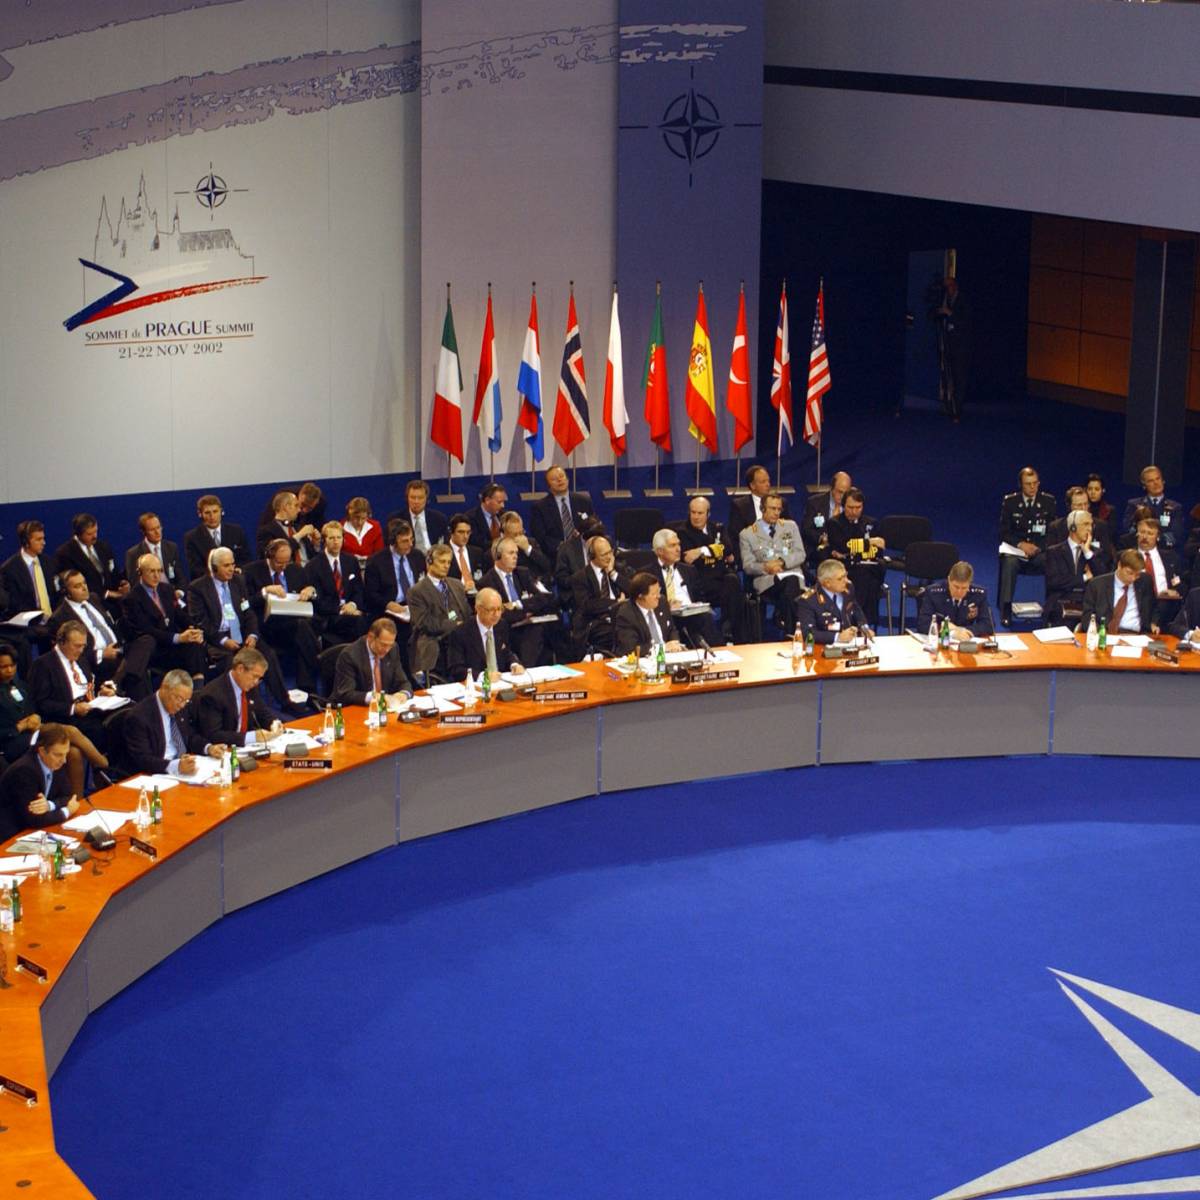 Разворот в сторону РФ: Макрон готов к действиям через Совет НАТО